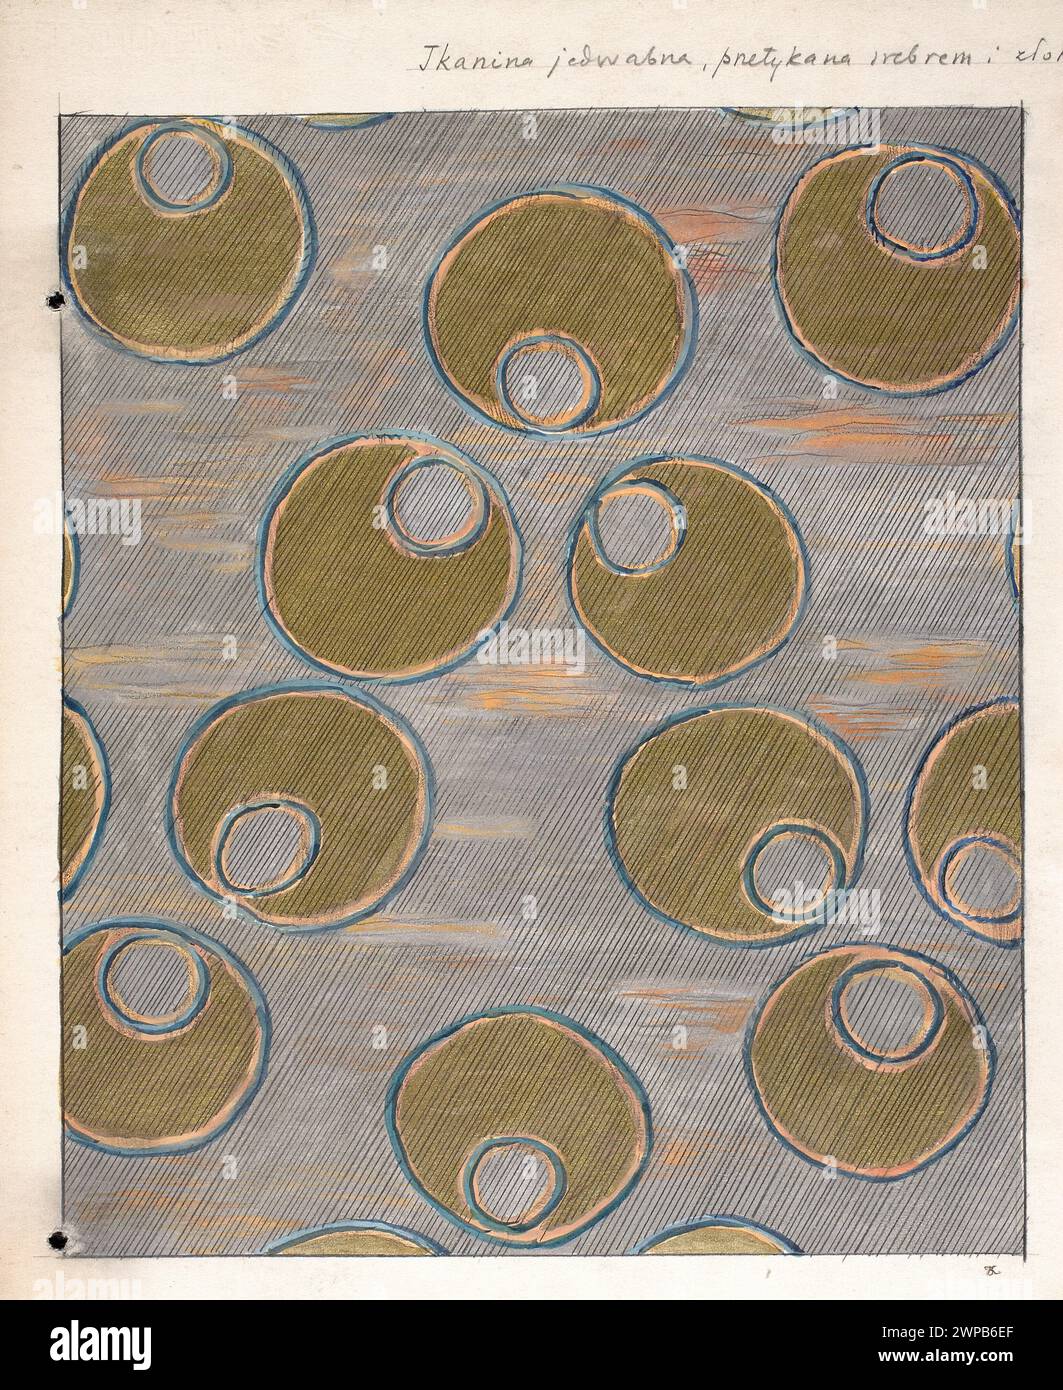 Silk fabric interwoven with silver and z Kotarbi, Mieczys Aw (1890-1943); 1916 (before November 2, 1916) (1916-00-00-1916-00-00);Poprzęcki, Szymon (? -1941), Poprzęcki, Szymon (? -1941)-harvest, silk, geometric ornament, silver, fabrics, silk fabrics, pattern, gold Stock Photo